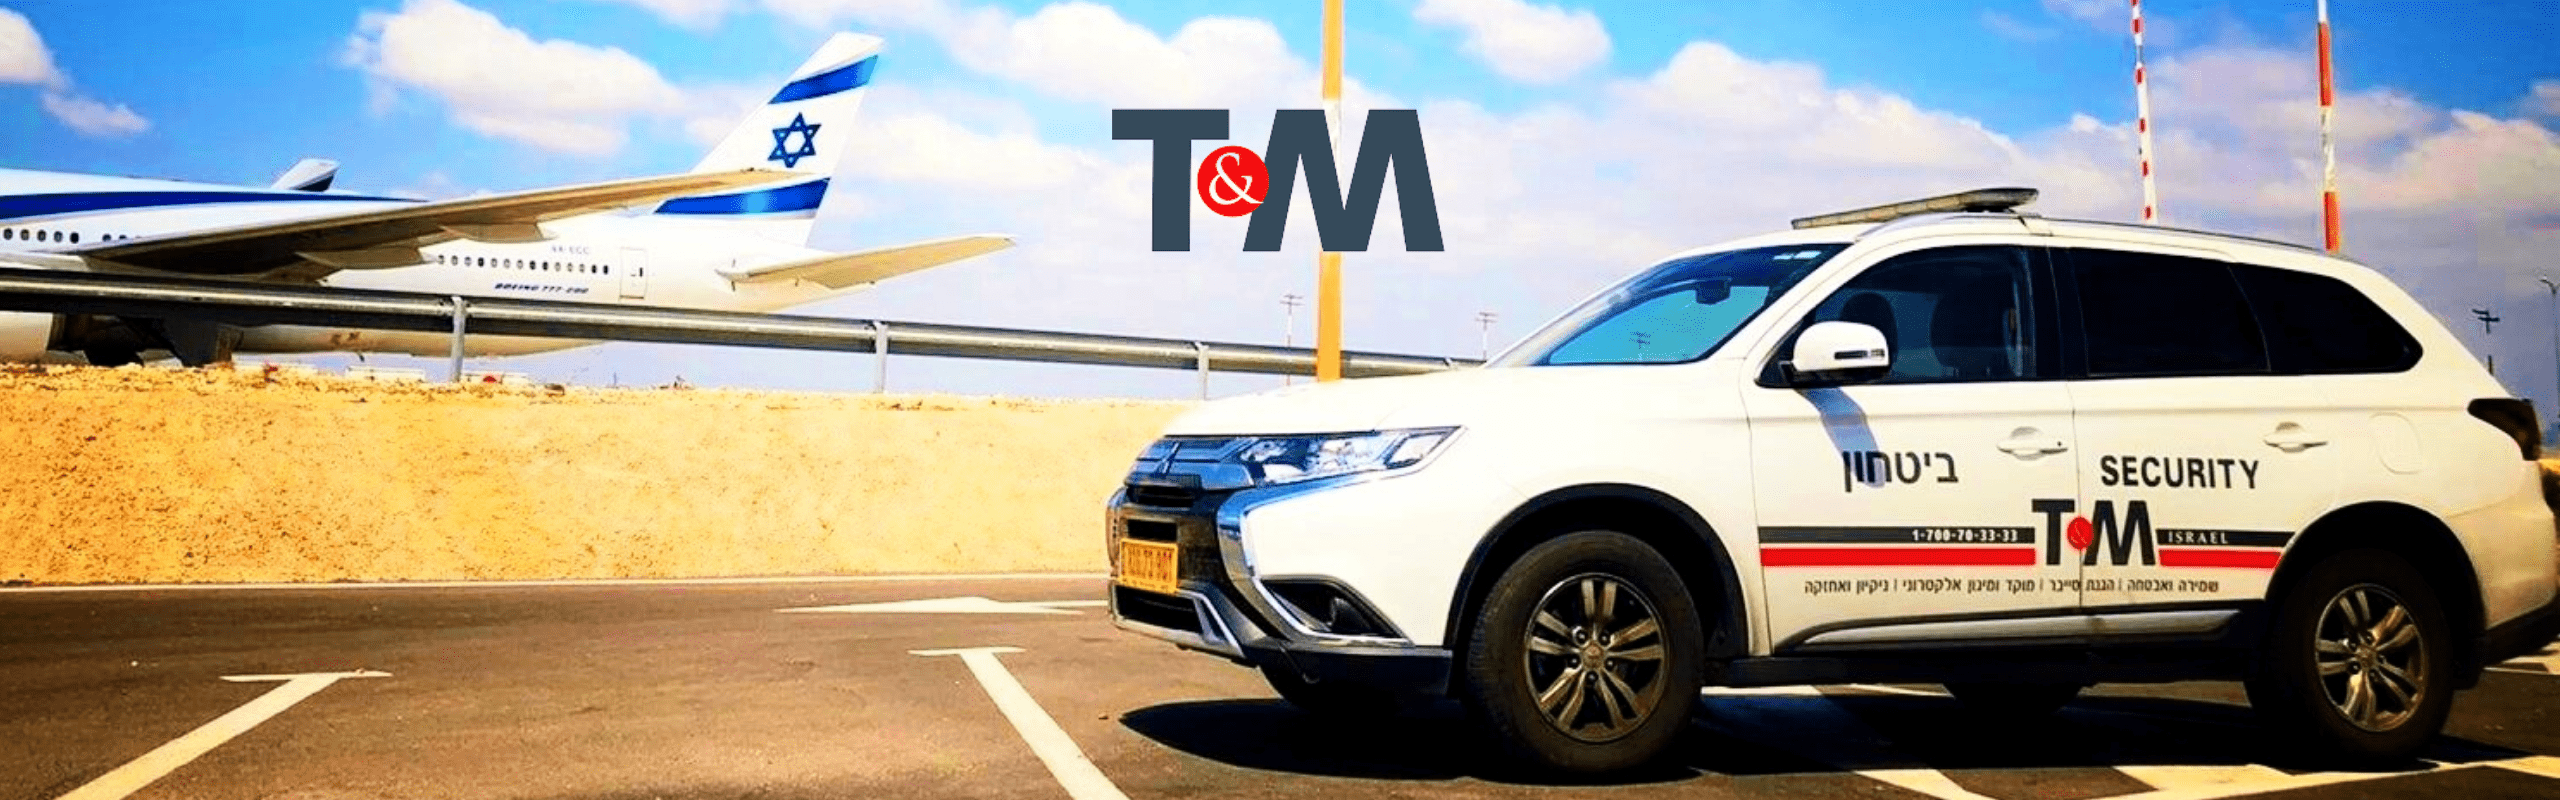 טי אנד אם ישראל (T&M Israel) - חטיבת האבטחה - נותנת החסות של הגילדה - הבית של מנהלי הביטחון